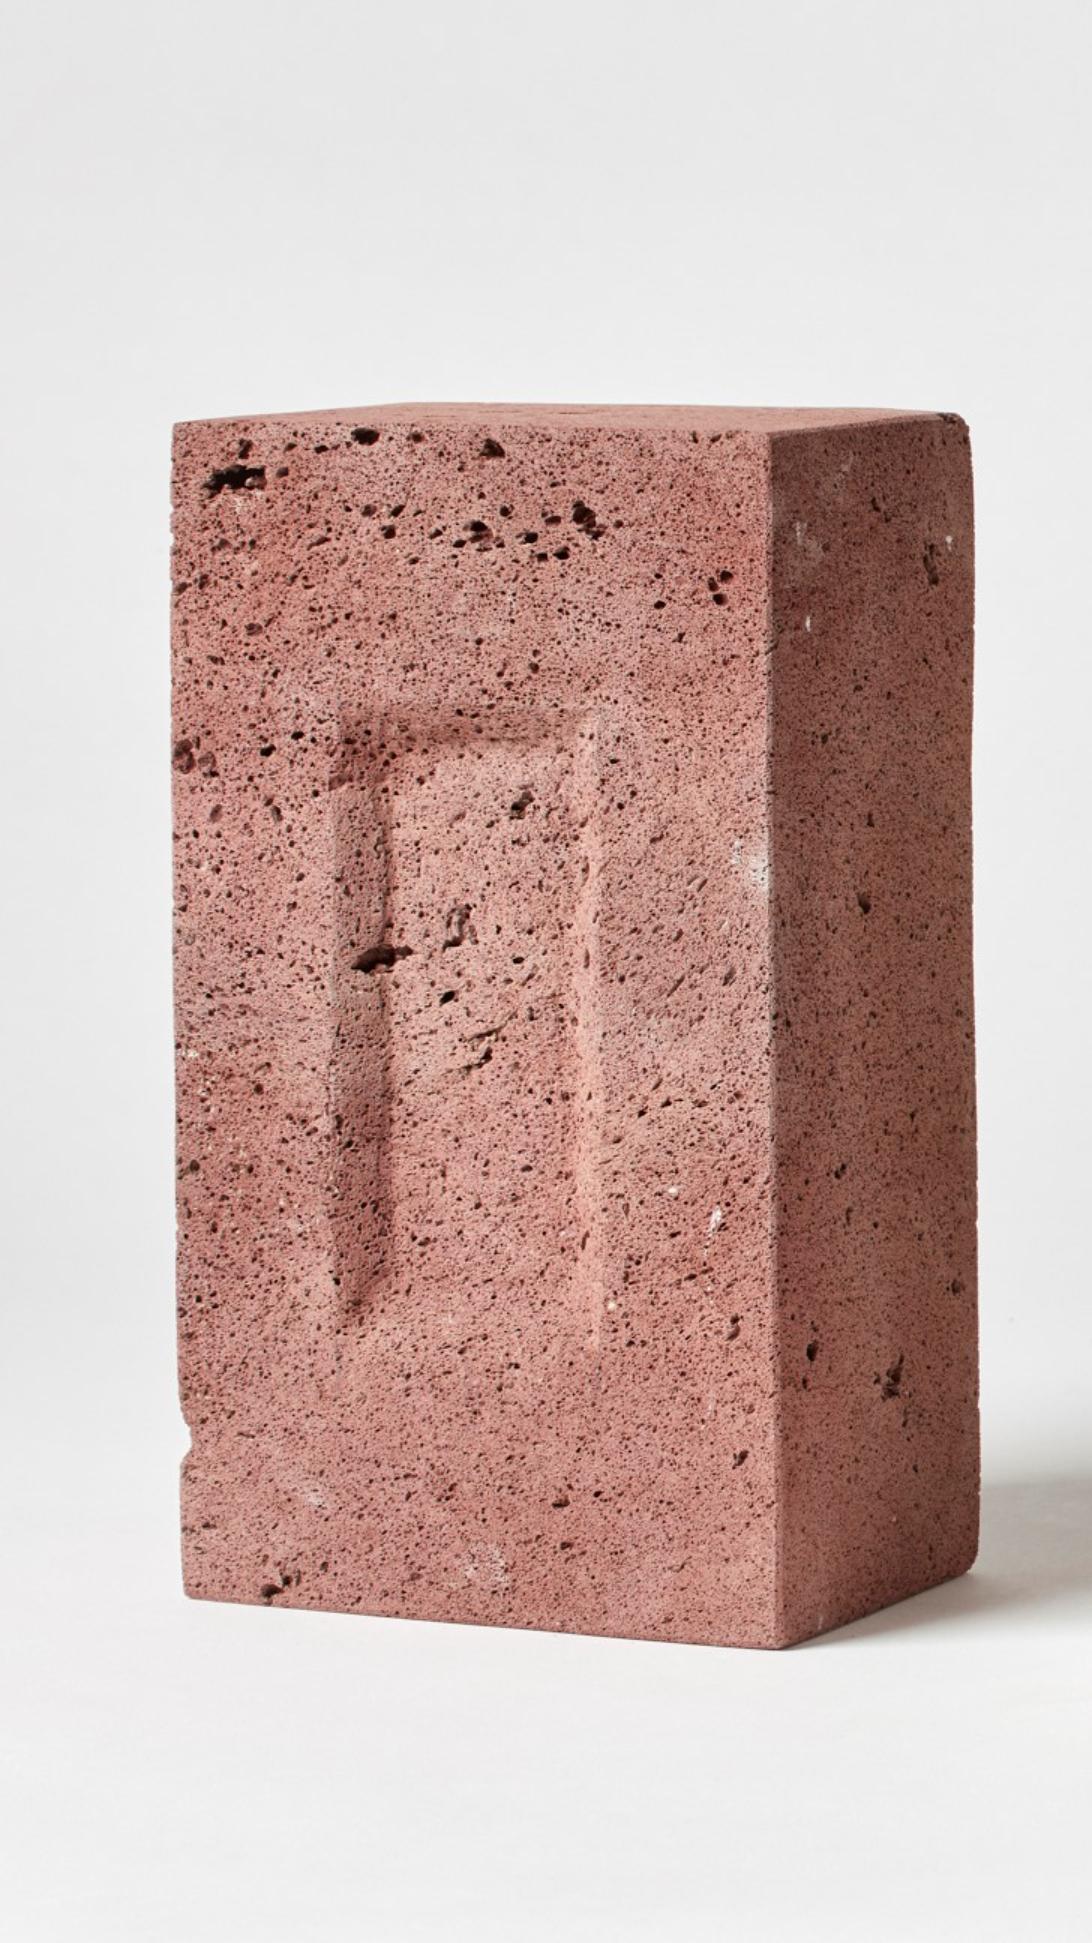 BRICK von Estudio Rafael Freyre
Abmessungen: B 12,5 T 9 x H 23 cm 
MATERIALIEN: Anden-Steine
Auch verfügbar: Andere Oberflächen verfügbar,

Der Ziegelstein ist ein allgemeines konstruktives Element, das Teil des städtischen Imaginären ist. In Peru